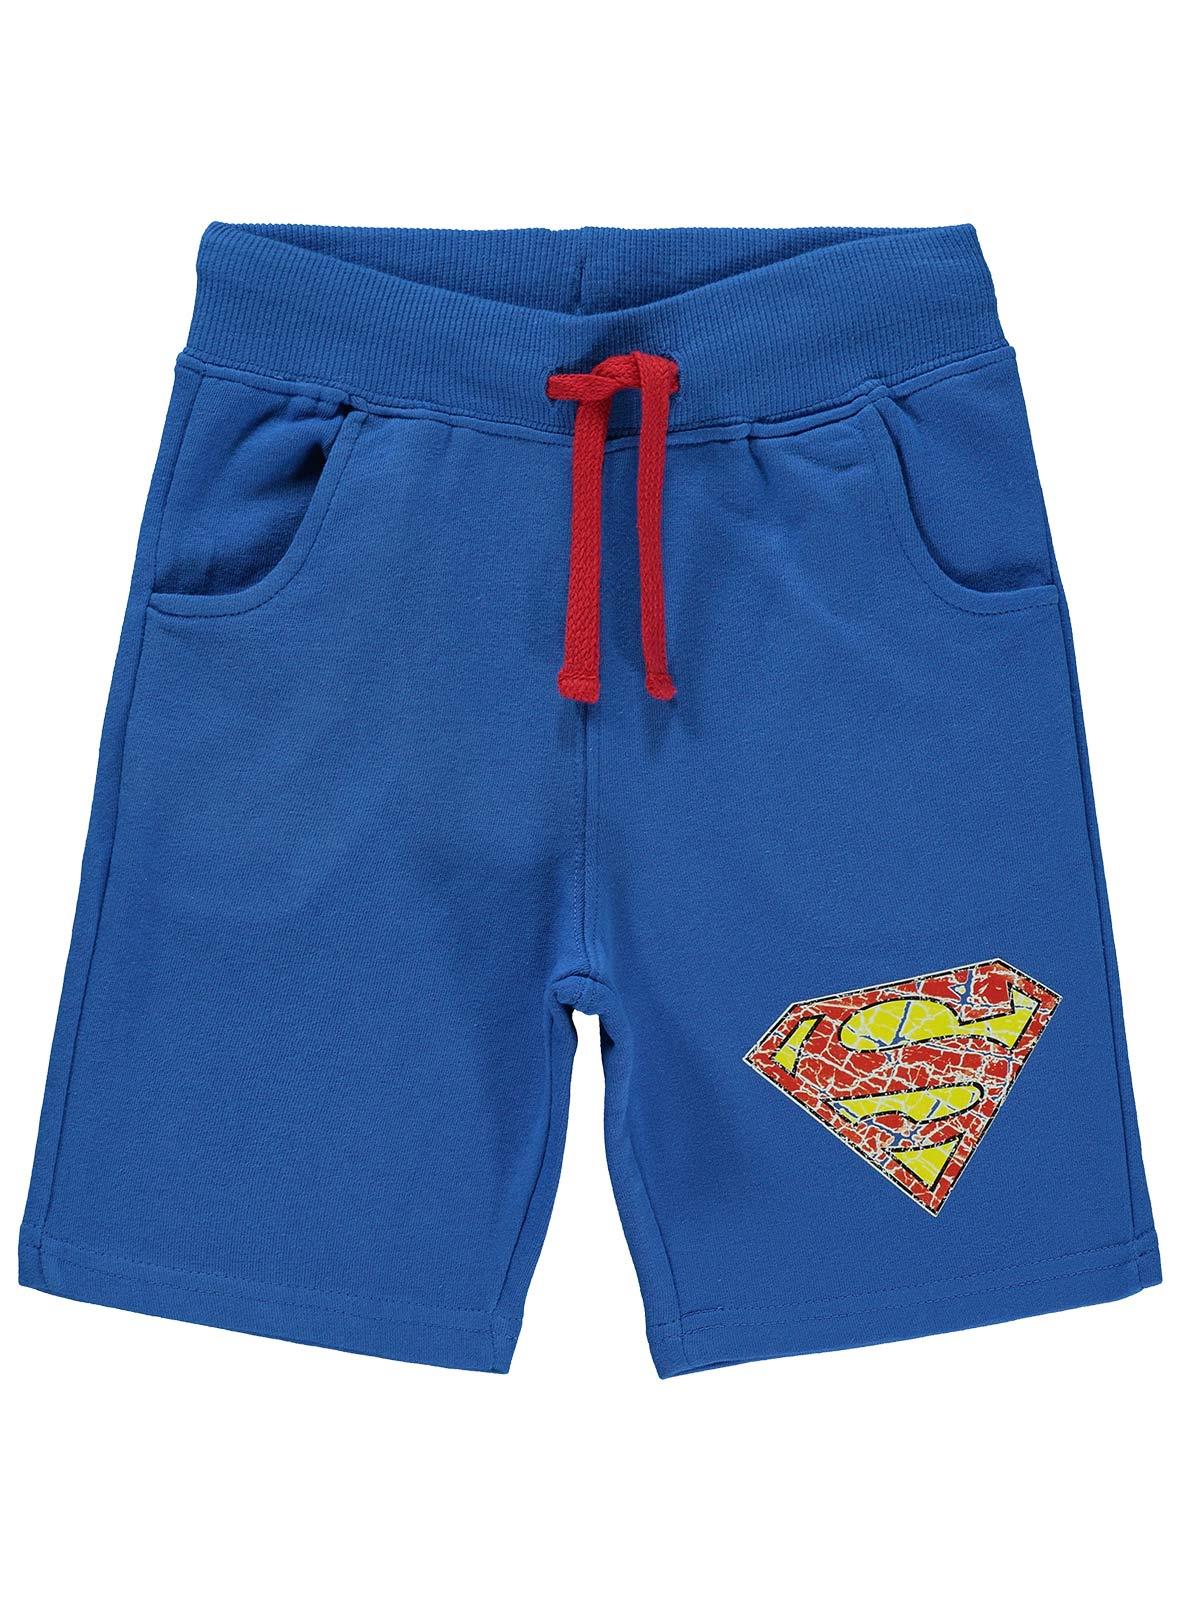 Süperman Erkek Çocuk Şort 3-9 Yaş Mavi